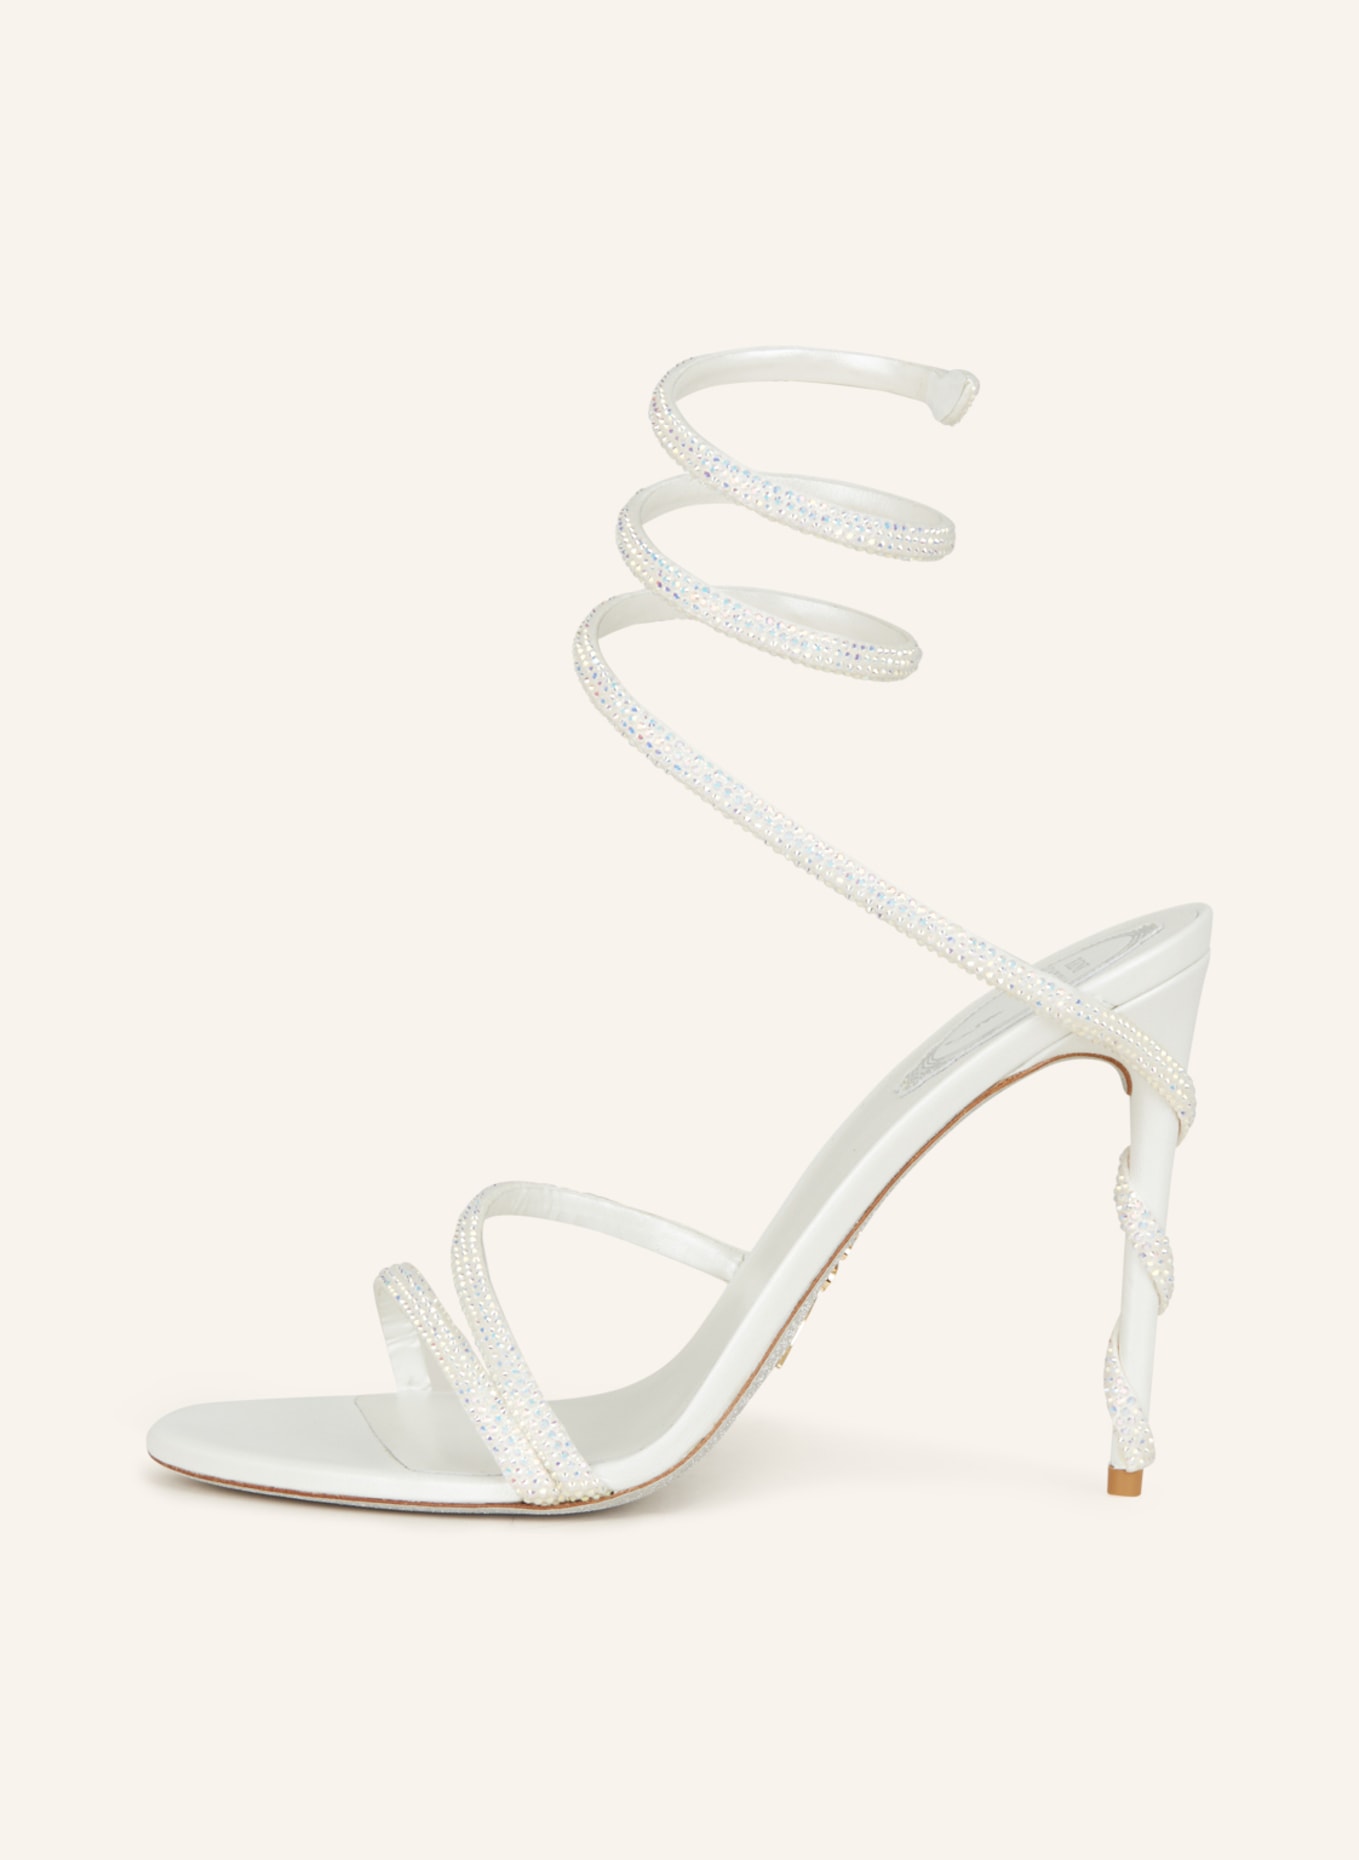 RENE CAOVILLA Sandals MARGOT, Color: WHITE (Image 4)